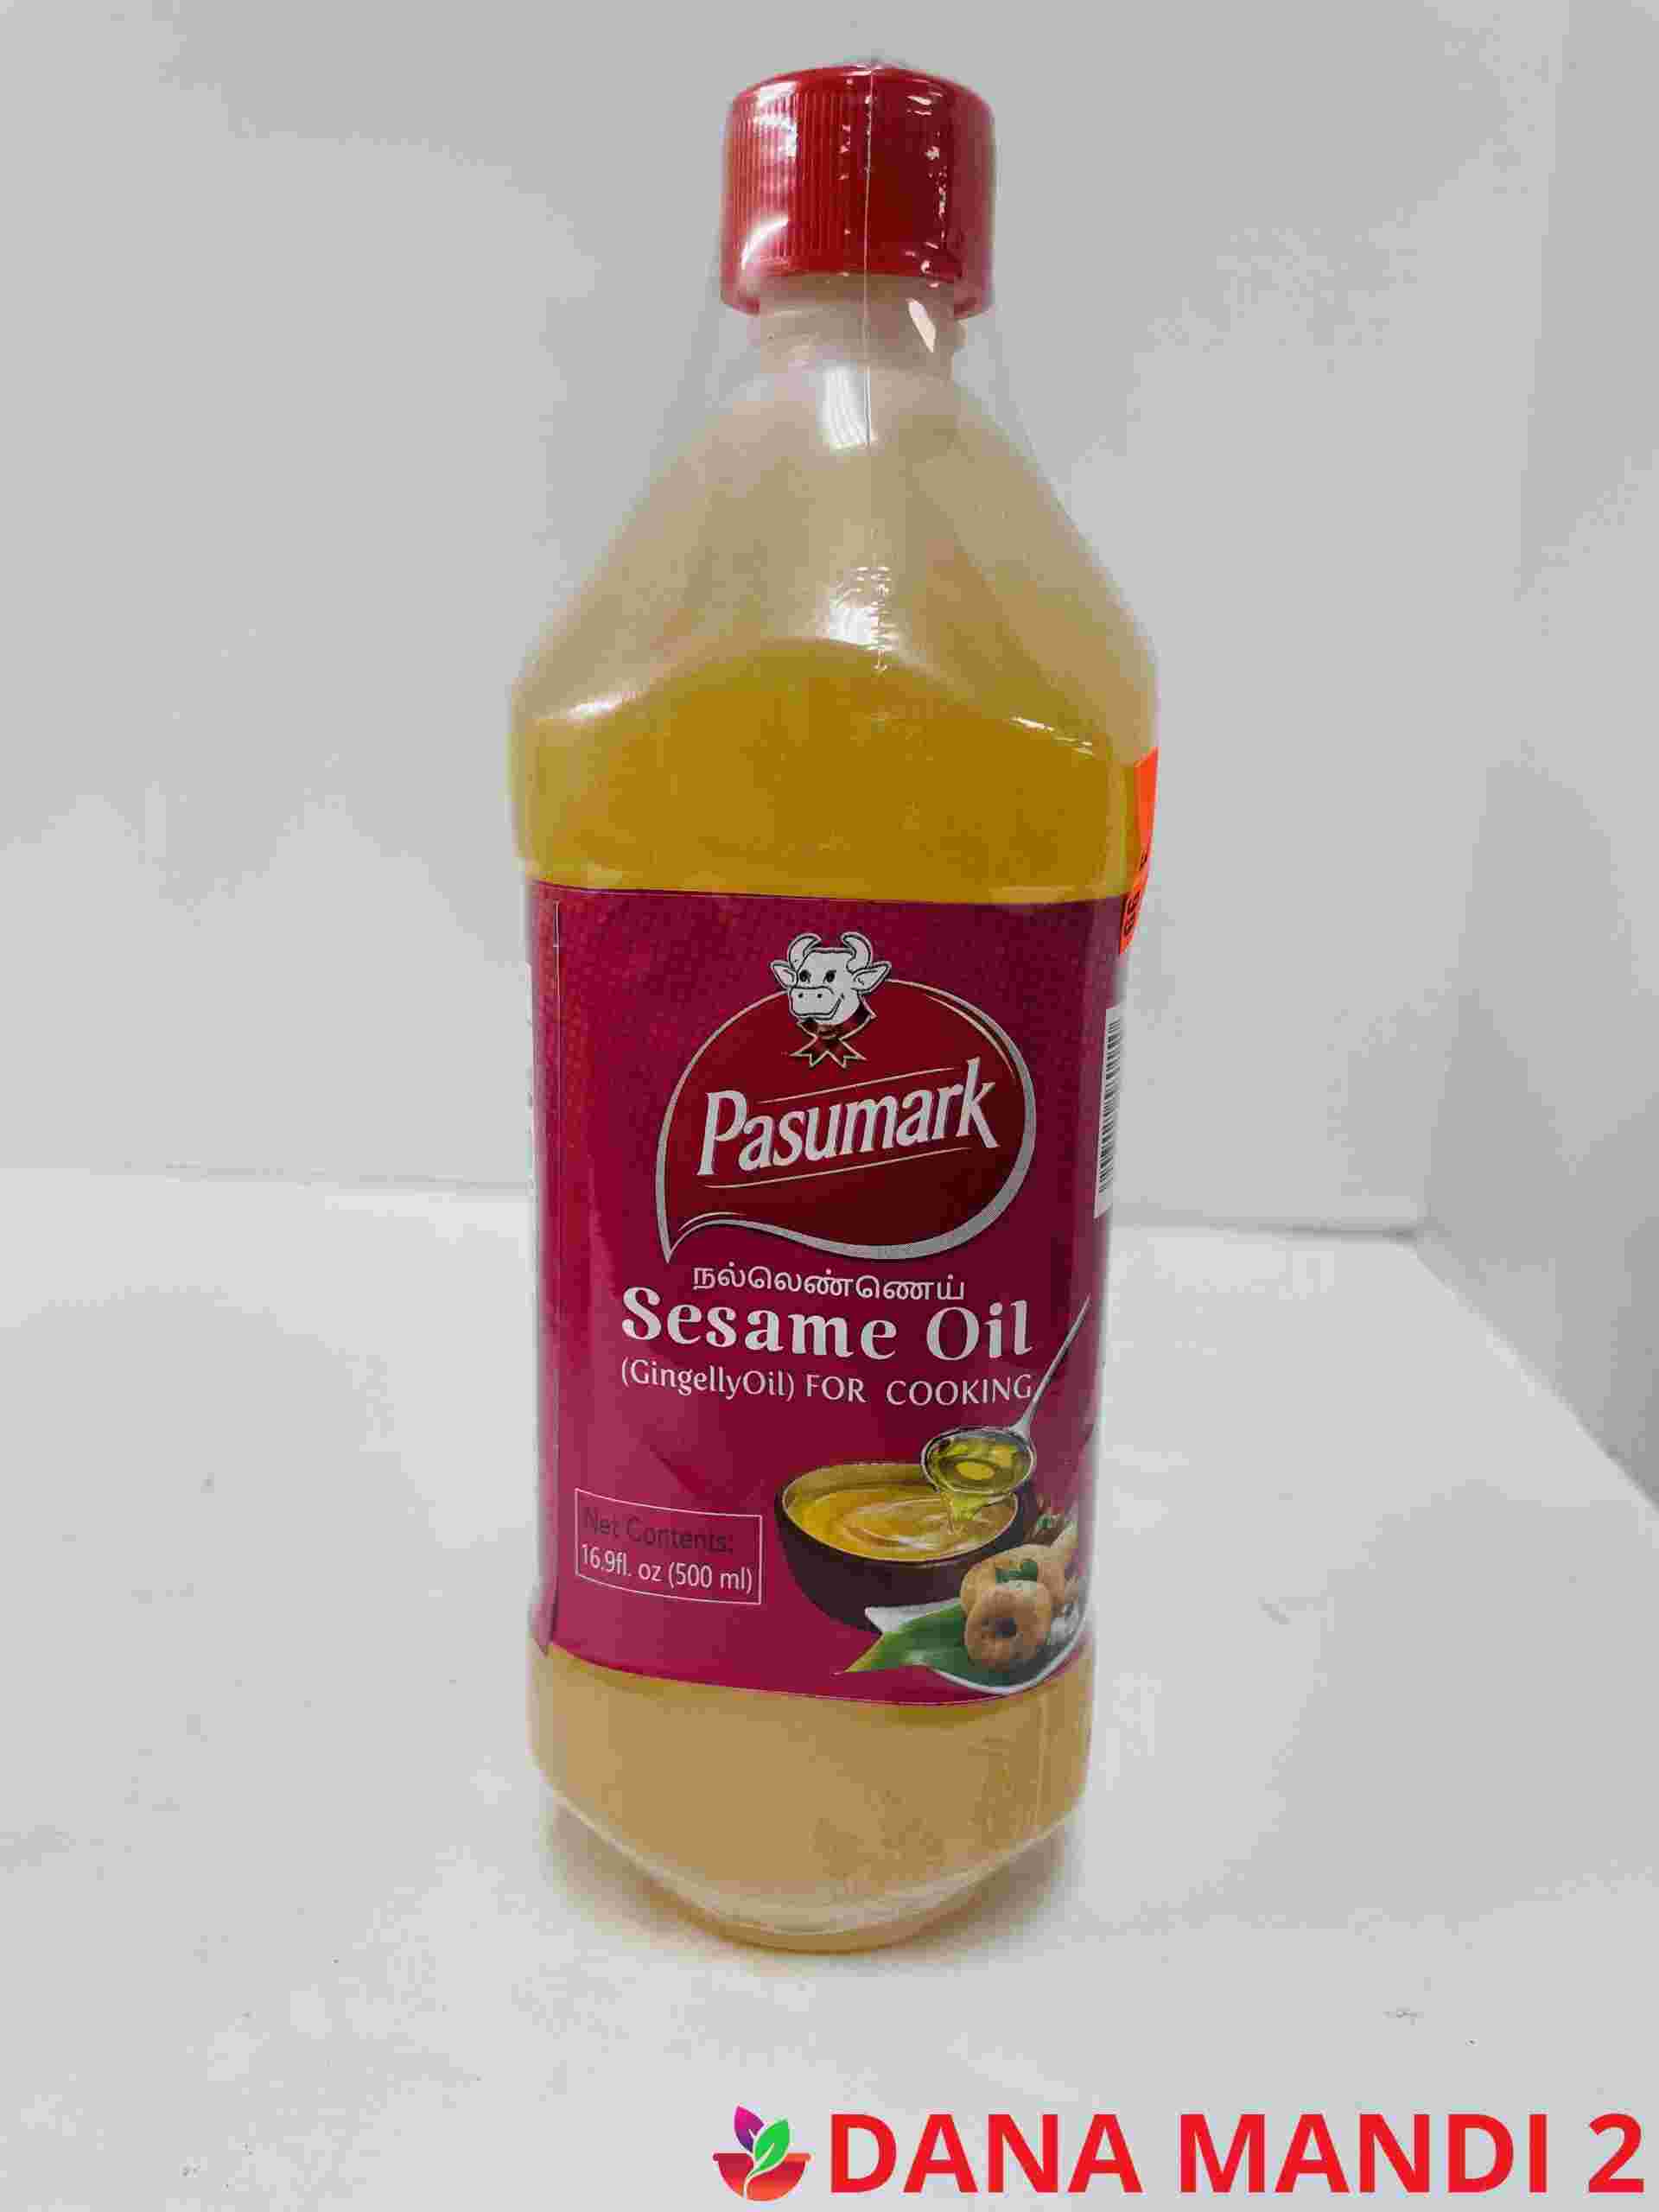 PASUMARK Sesame Oil Gingelly ( Til ) Oil